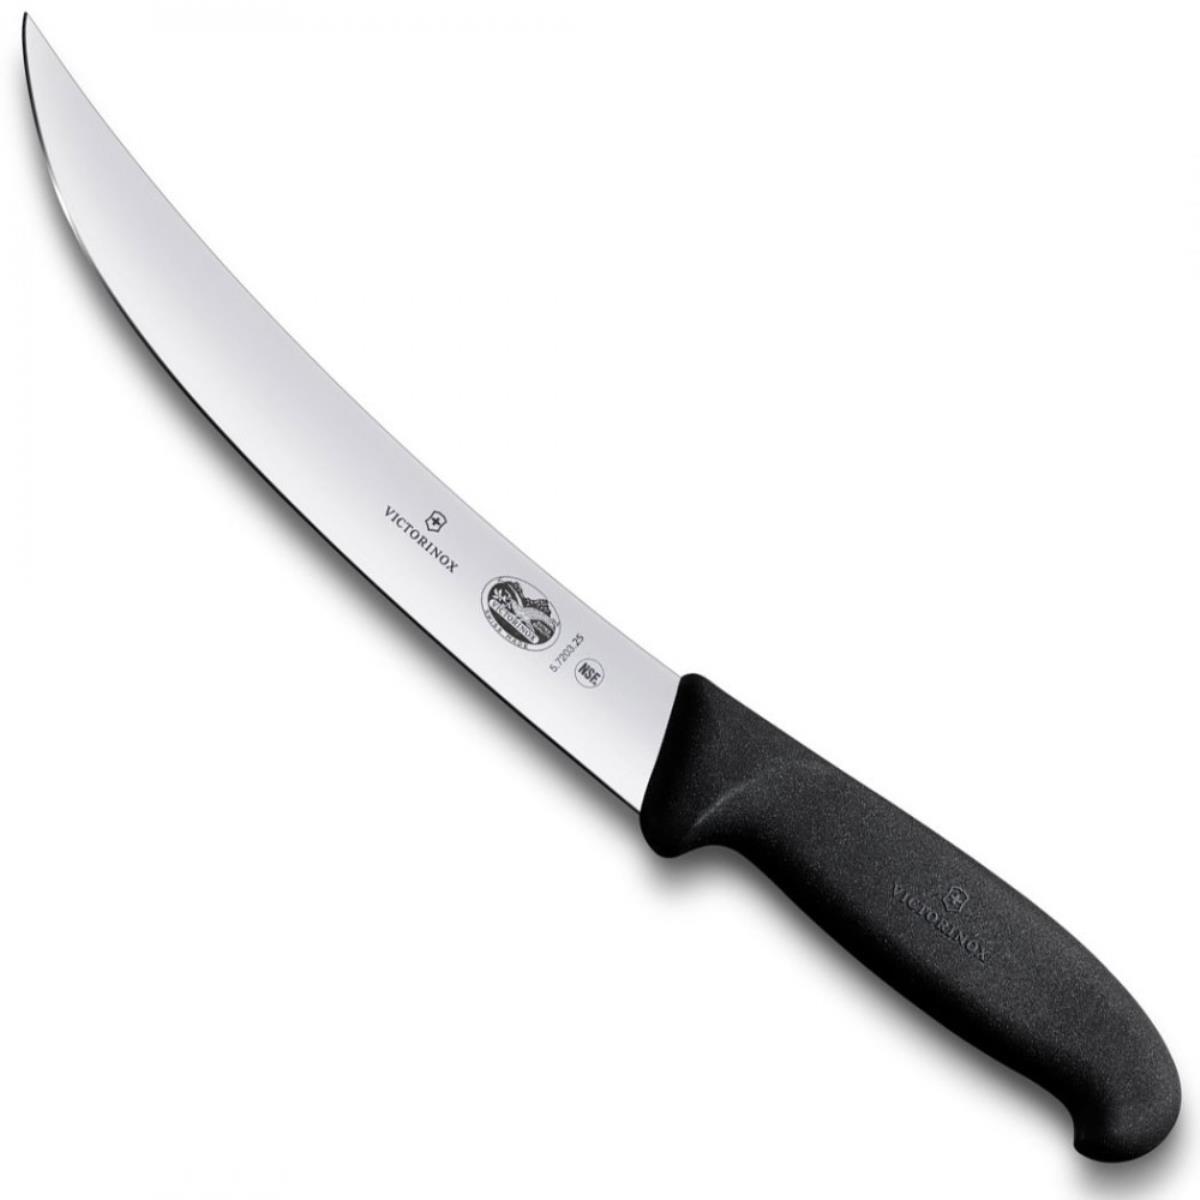 Нож жиловочный с изогнутым лезвием 5.7203.25 VICTORINOX нож 5 5503 20 жиловочный нож прямое лезвие victorinox